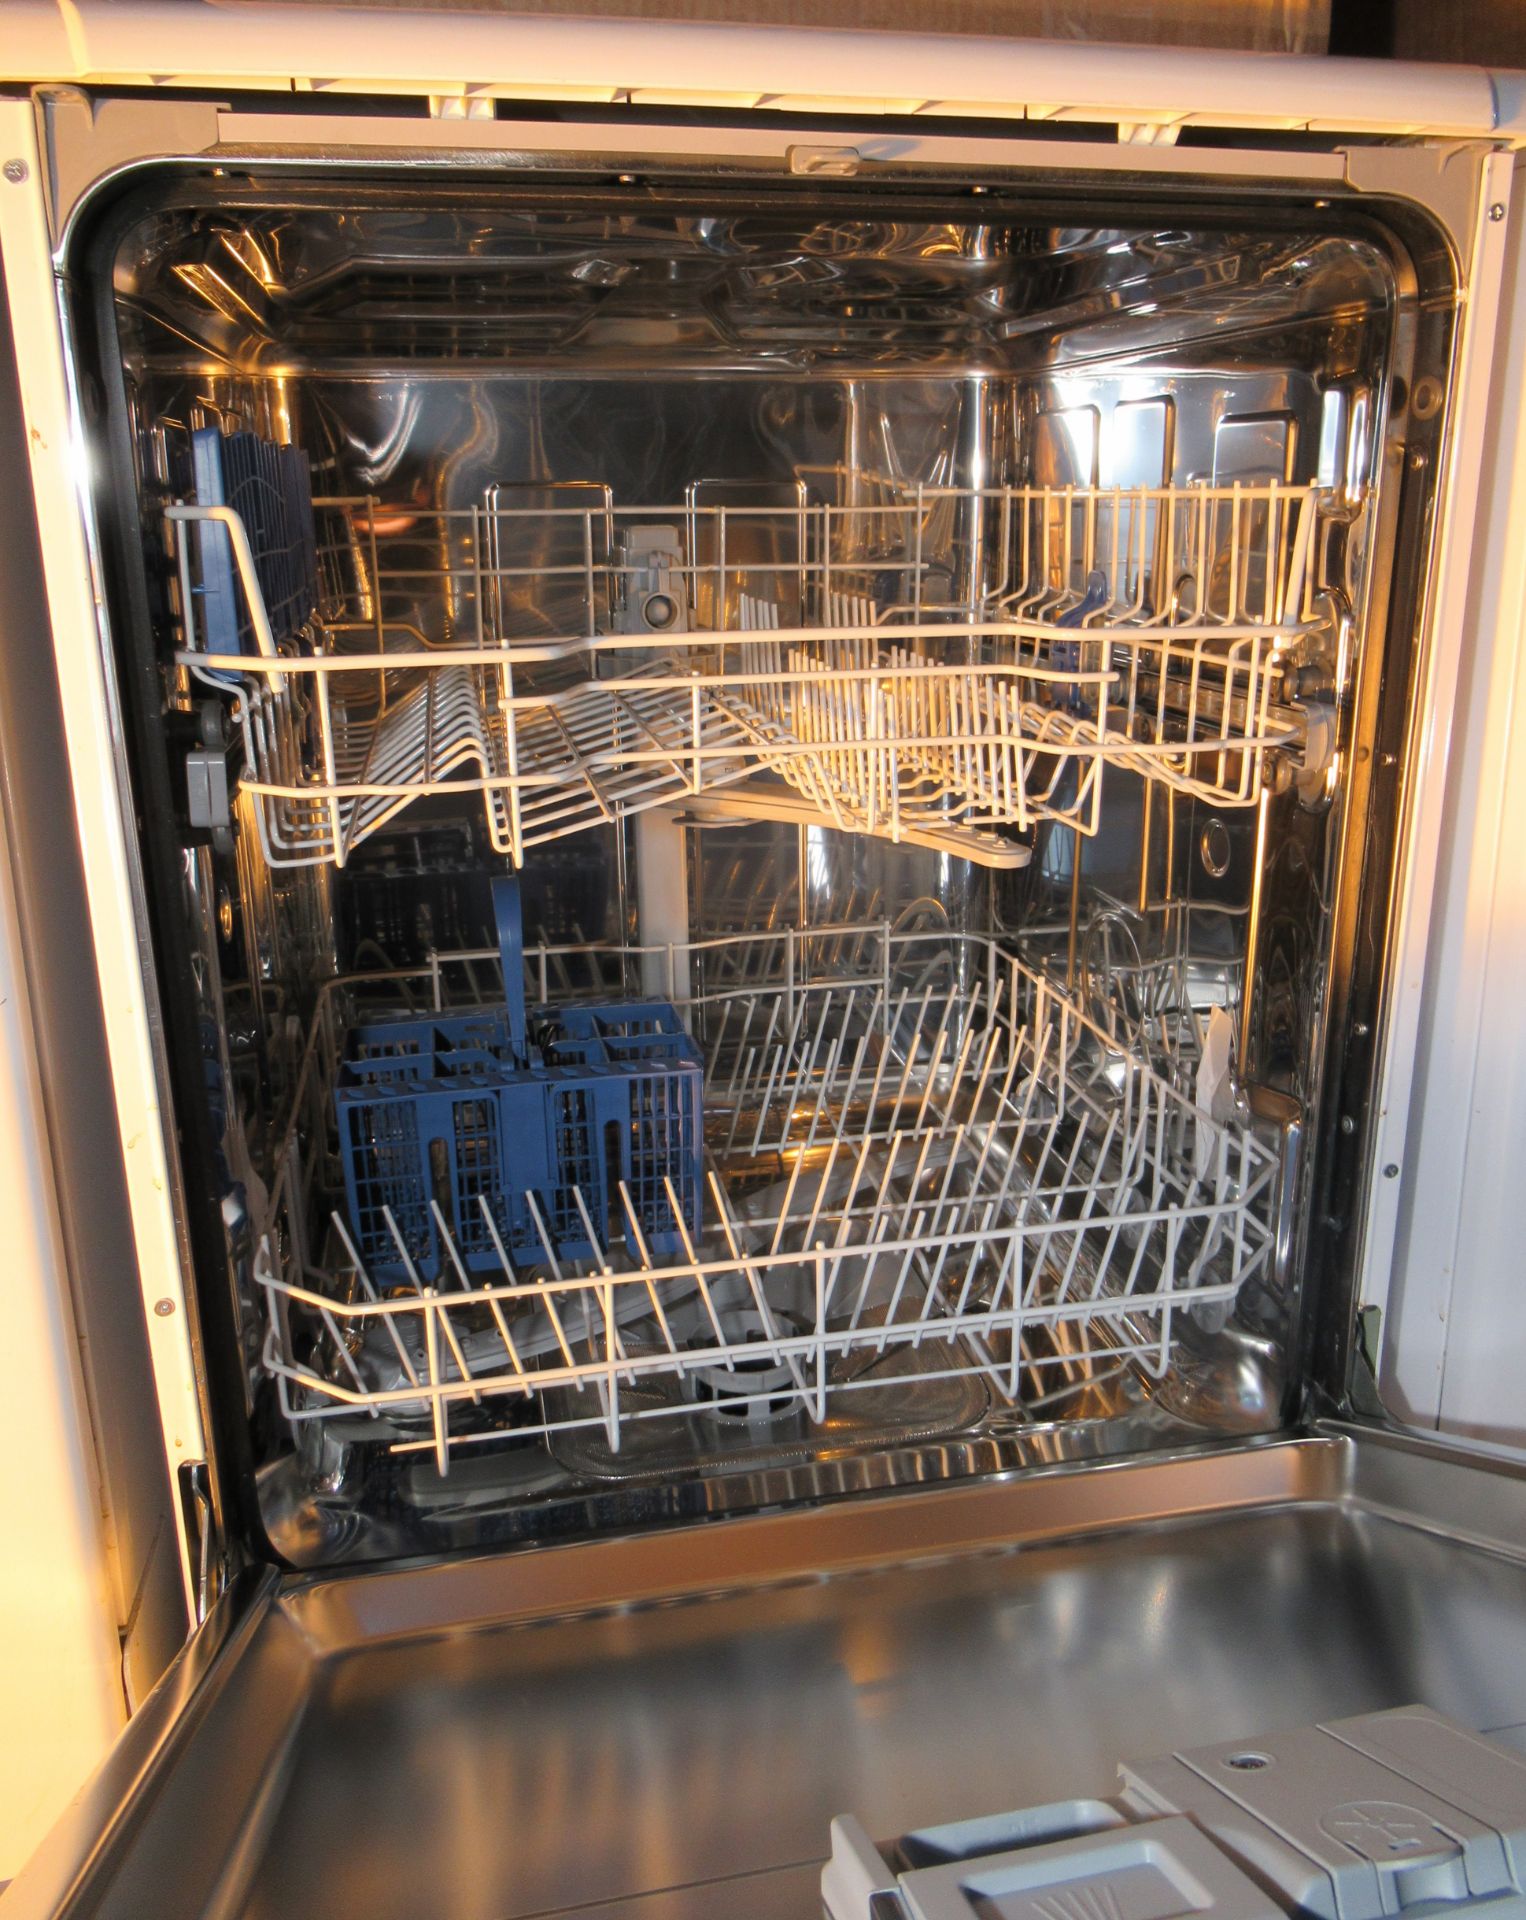 Indesit Undercounter Dishwasher - Image 3 of 3